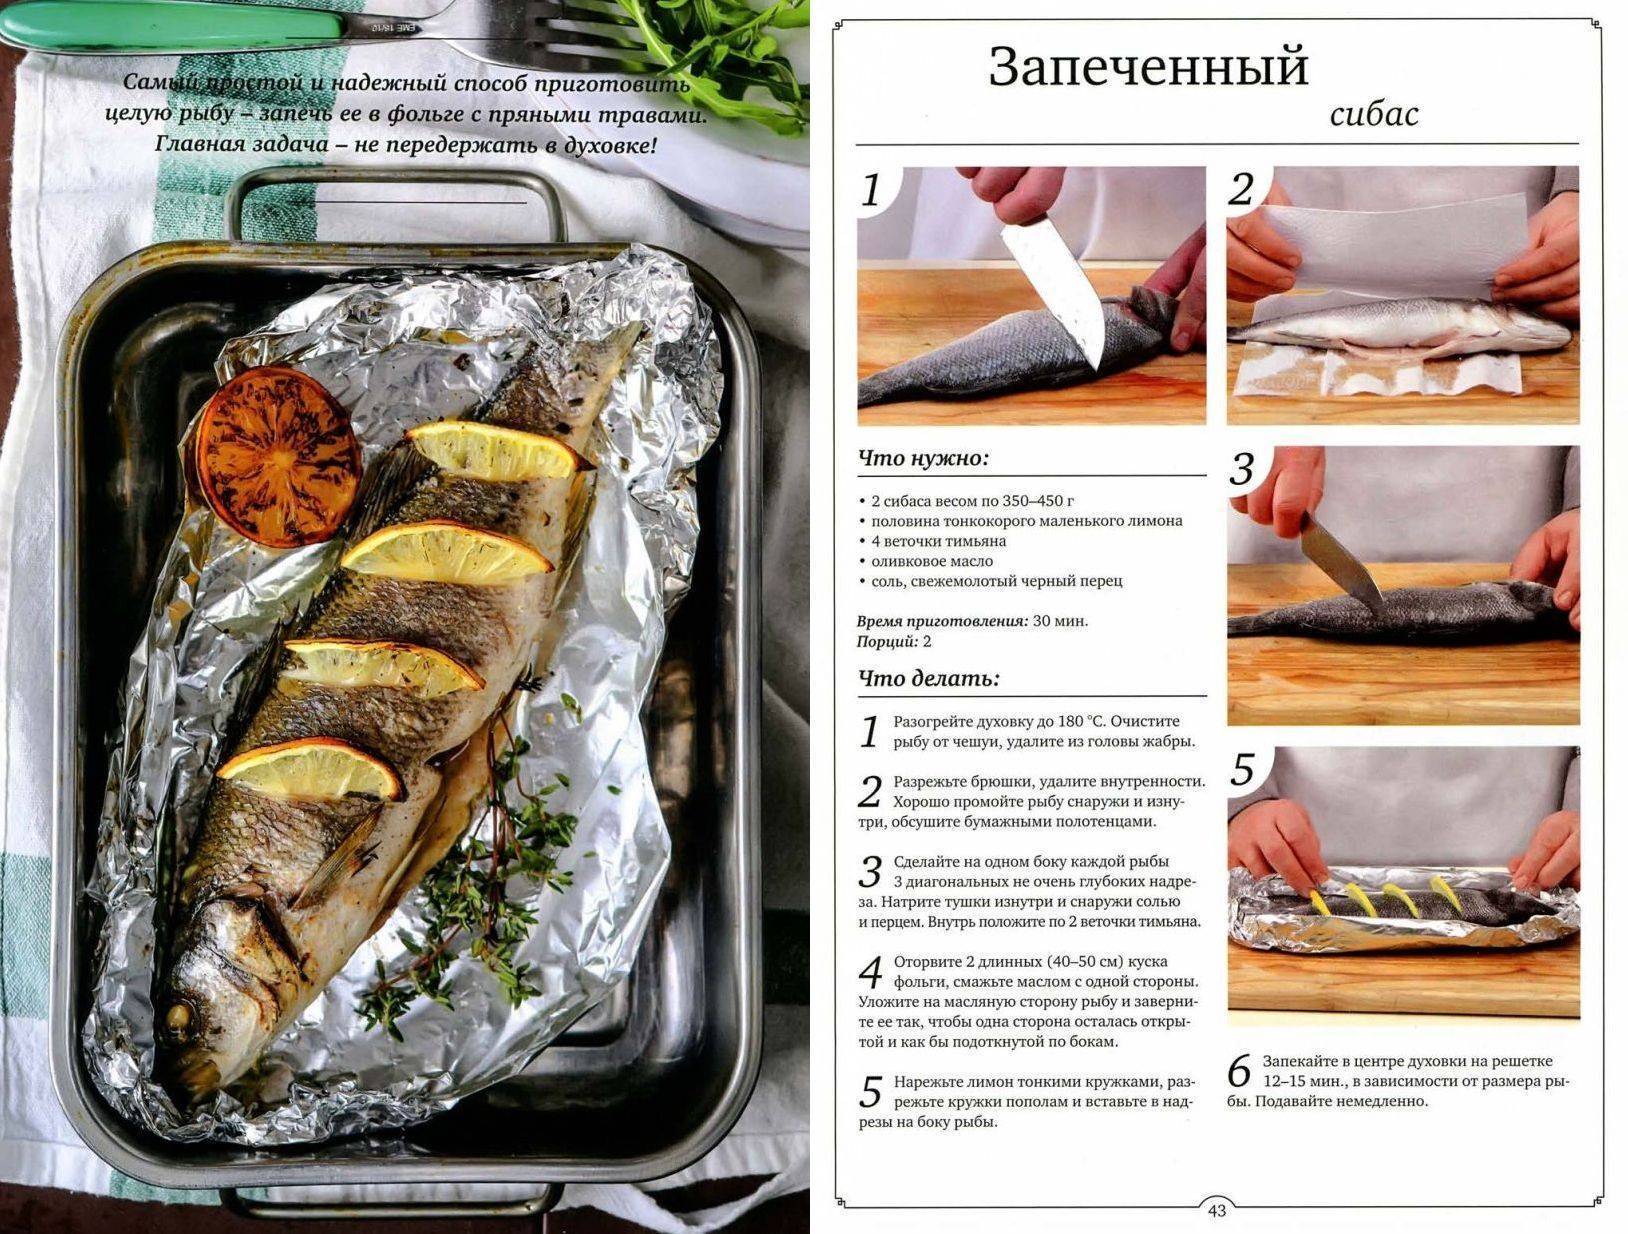 Приготовления рыбы сибас: популярные рецепты